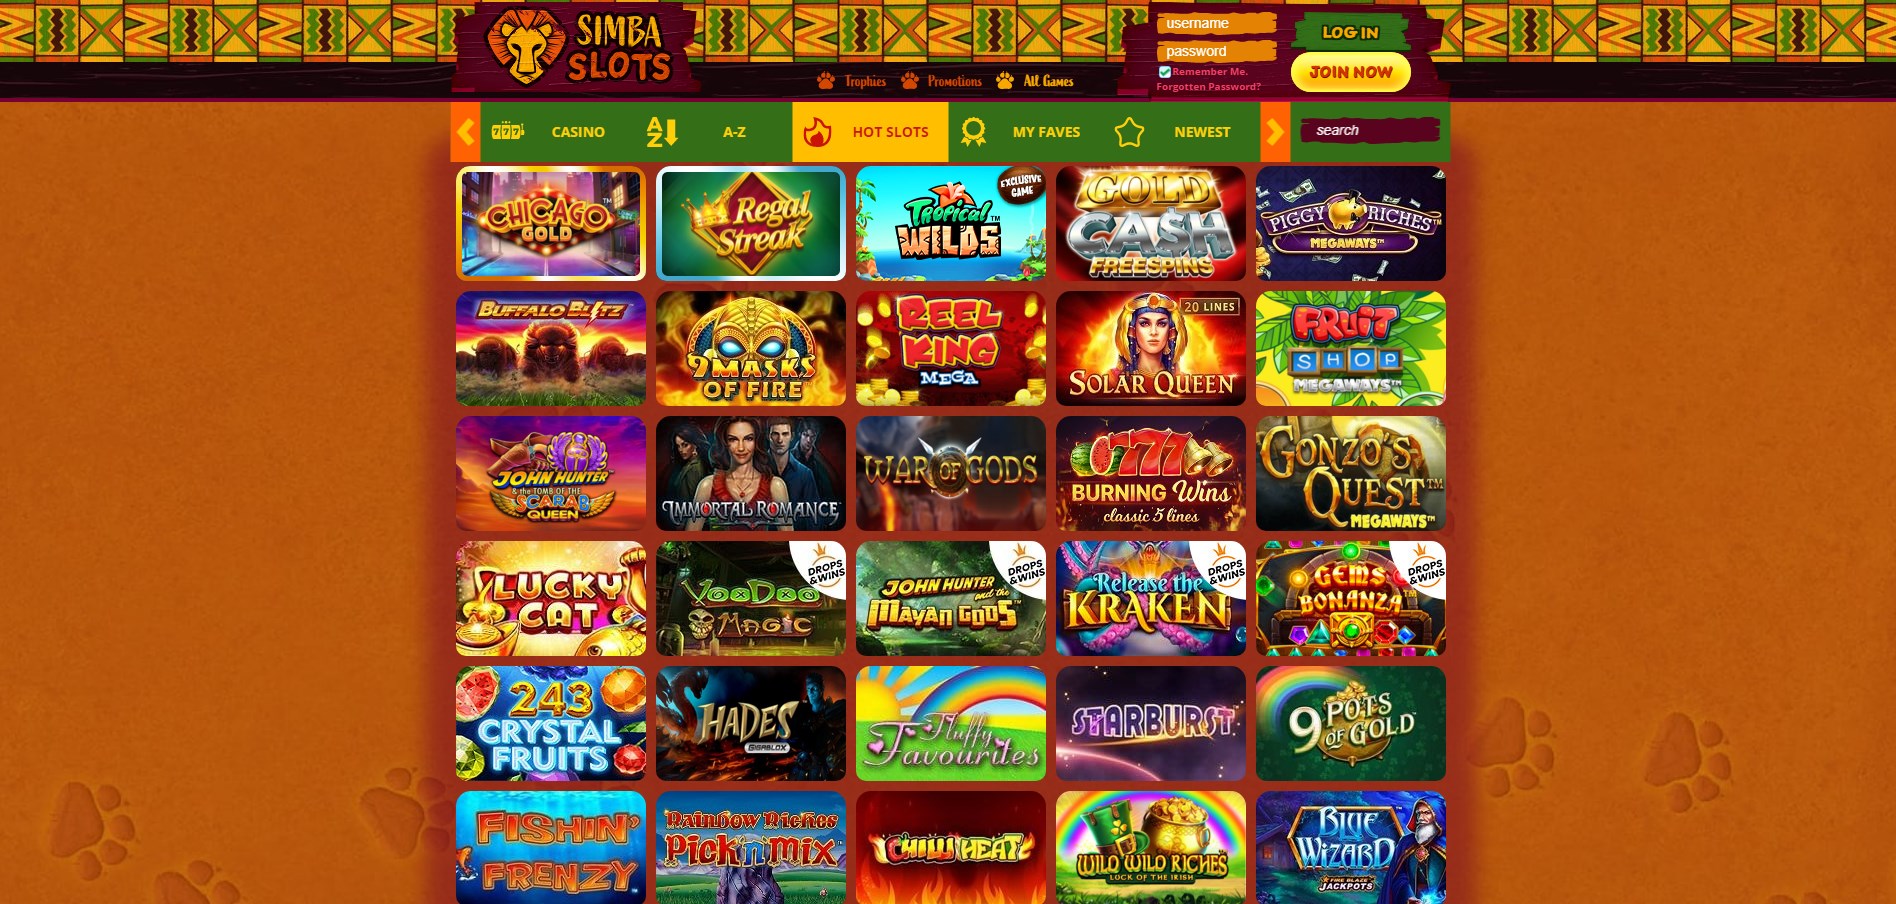 Simba Slots Casino Games